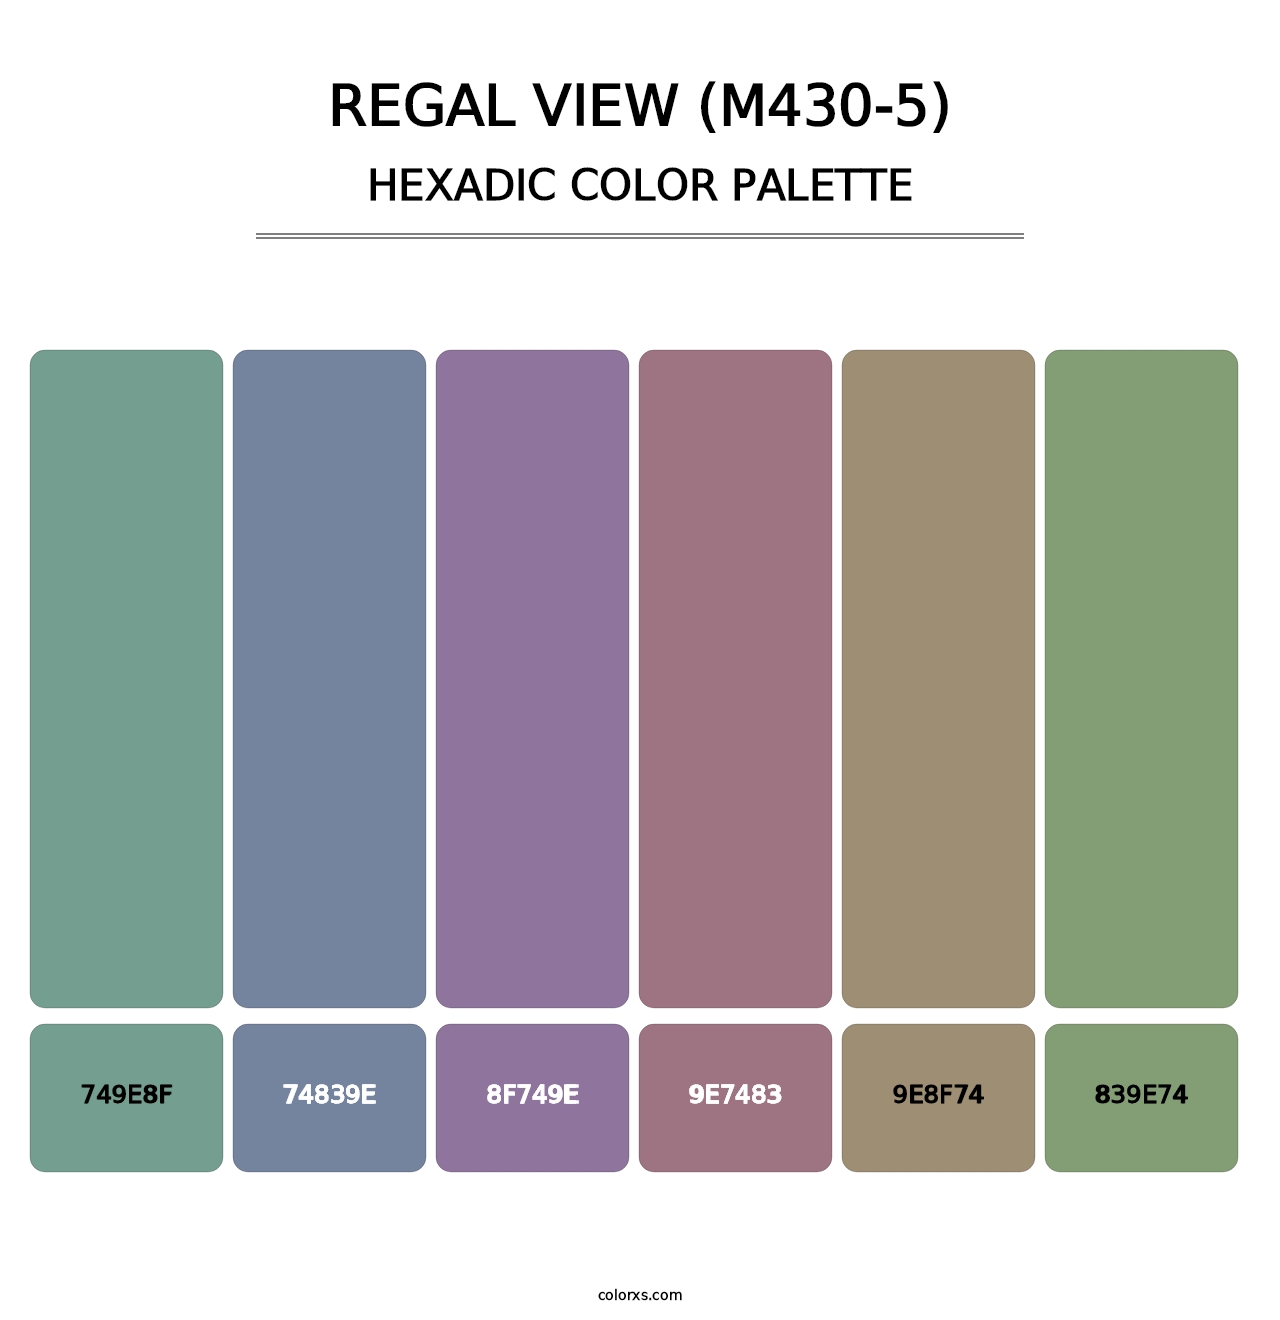 Regal View (M430-5) - Hexadic Color Palette